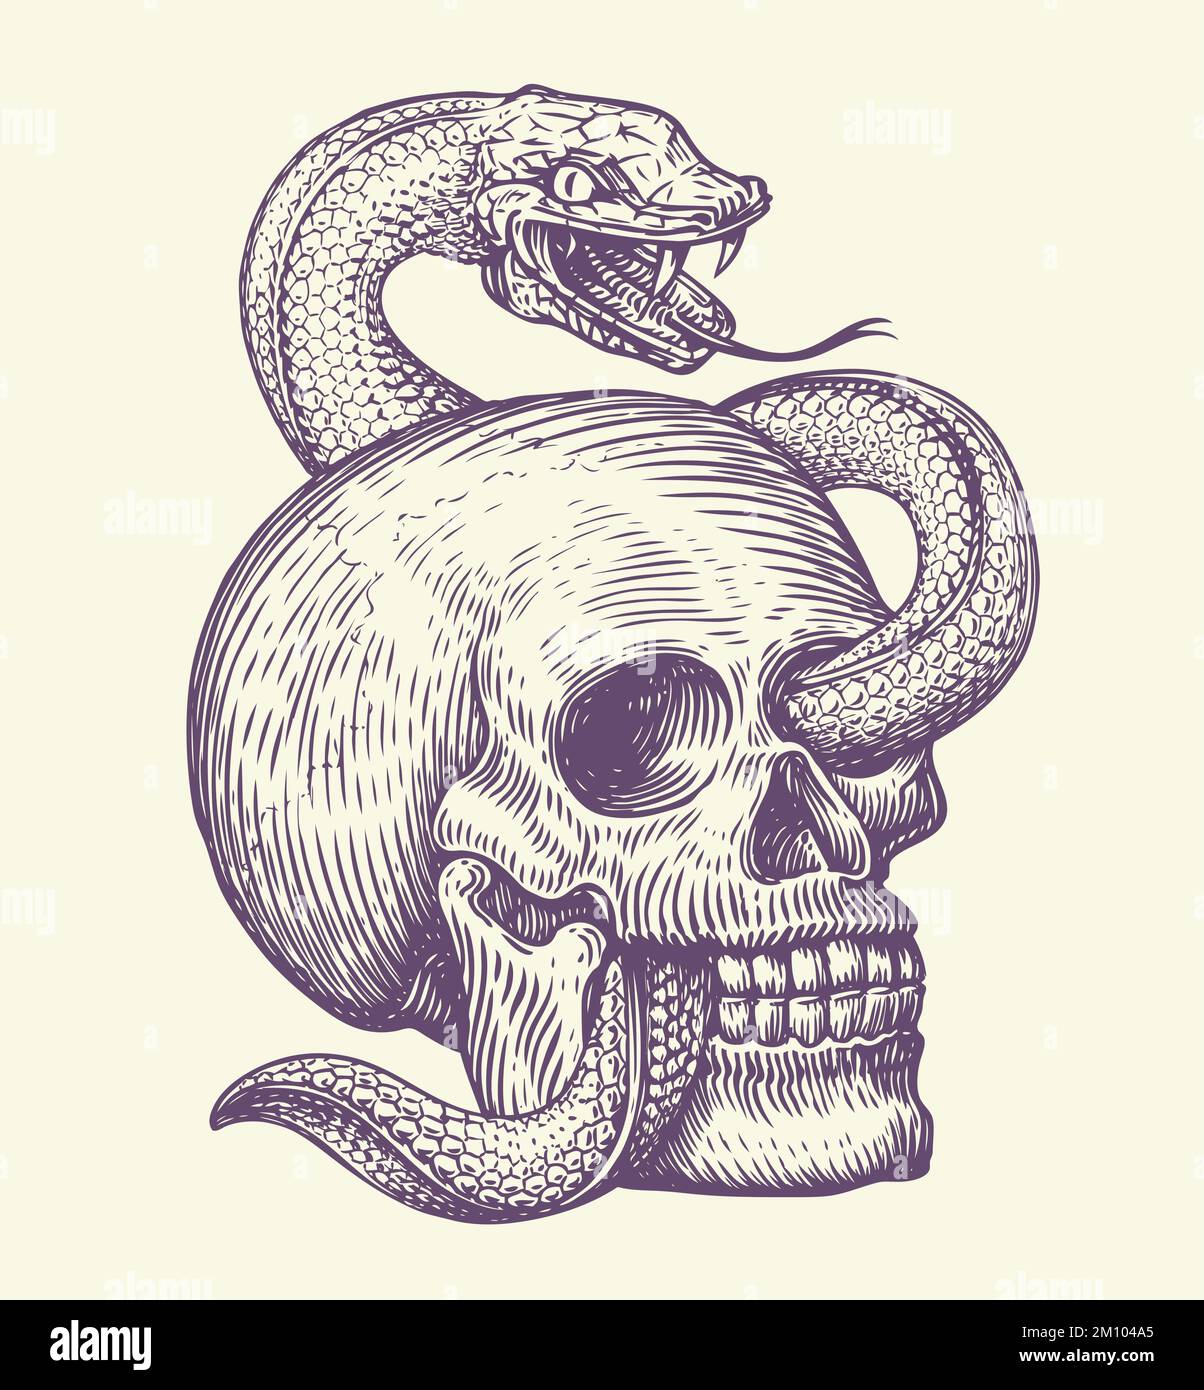 Cranio umano con serpente strisciante. Disegno disegnato a mano in stile vintage. Illustrazione vettoriale del tatuaggio monocromatico Illustrazione Vettoriale